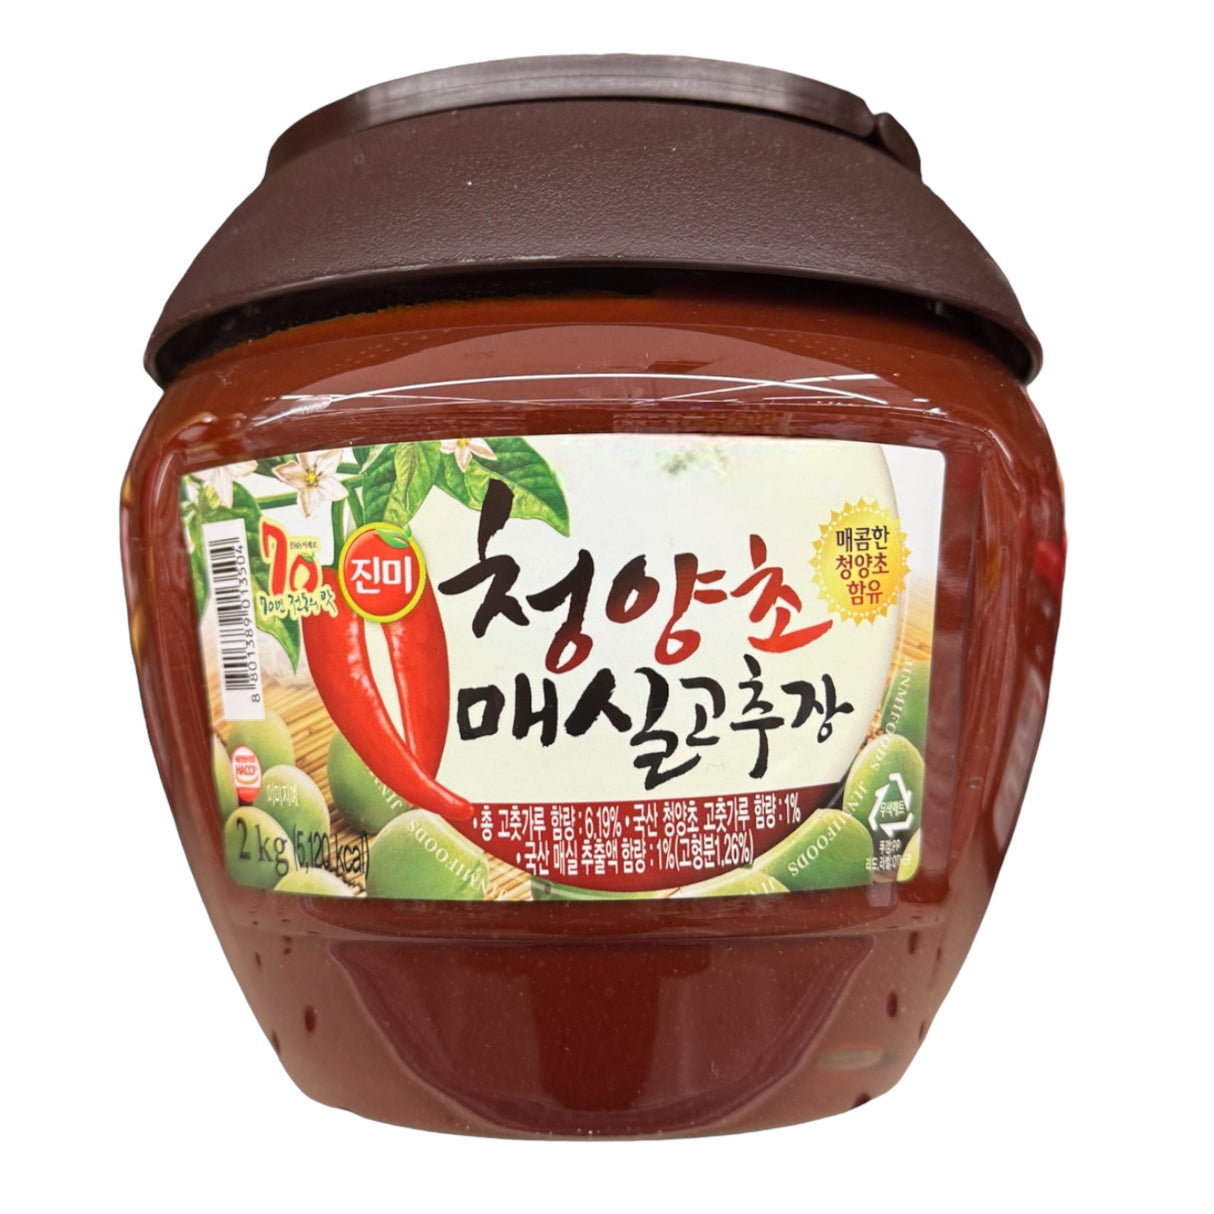 JM Plum Hot Red Pepper Paste (Cheongyangcho Maesil Gochujang)